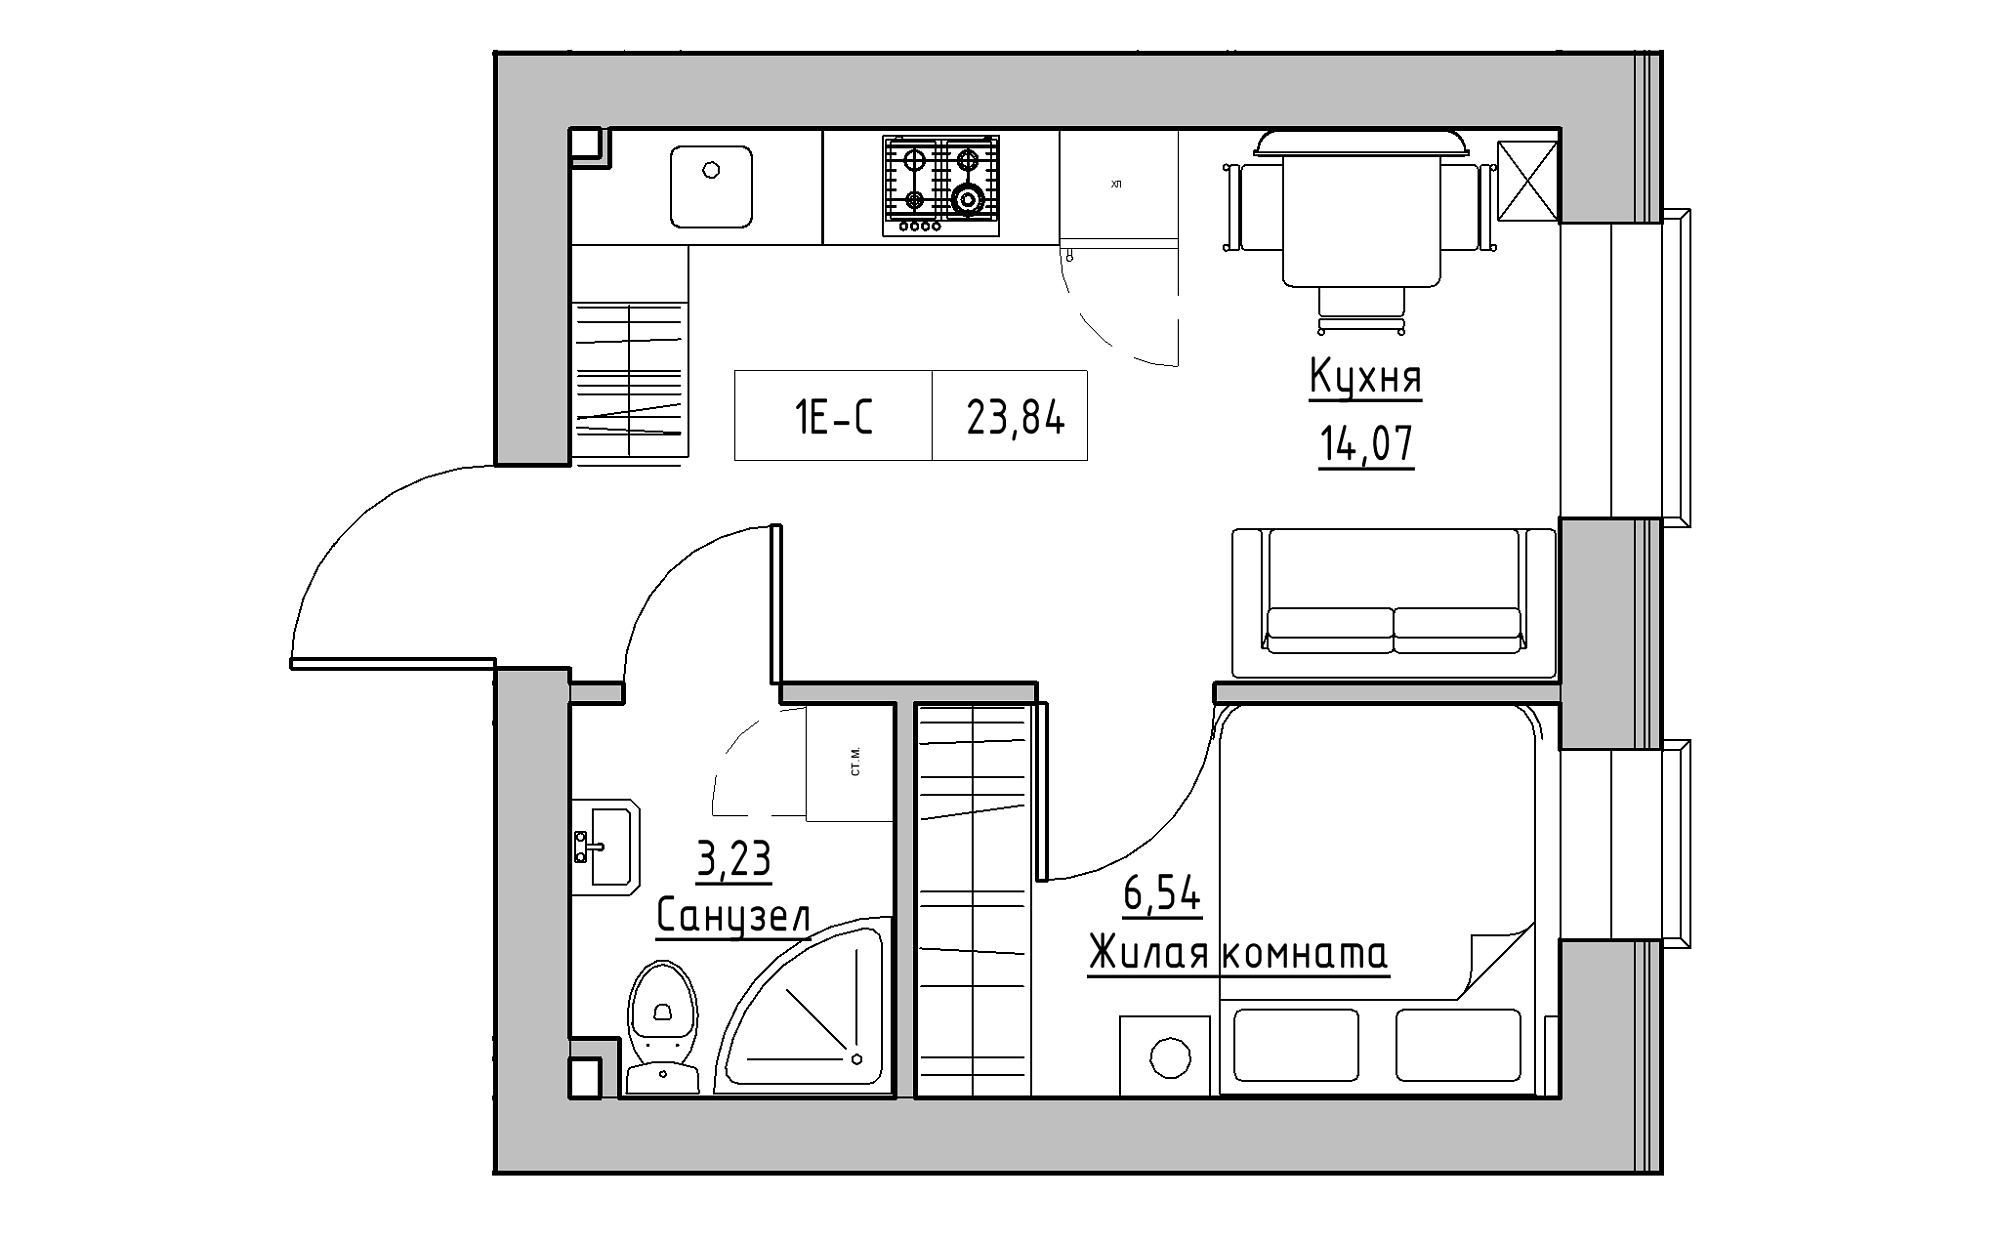 Планування 1-к квартира площею 23.84м2, KS-022-05/0014.